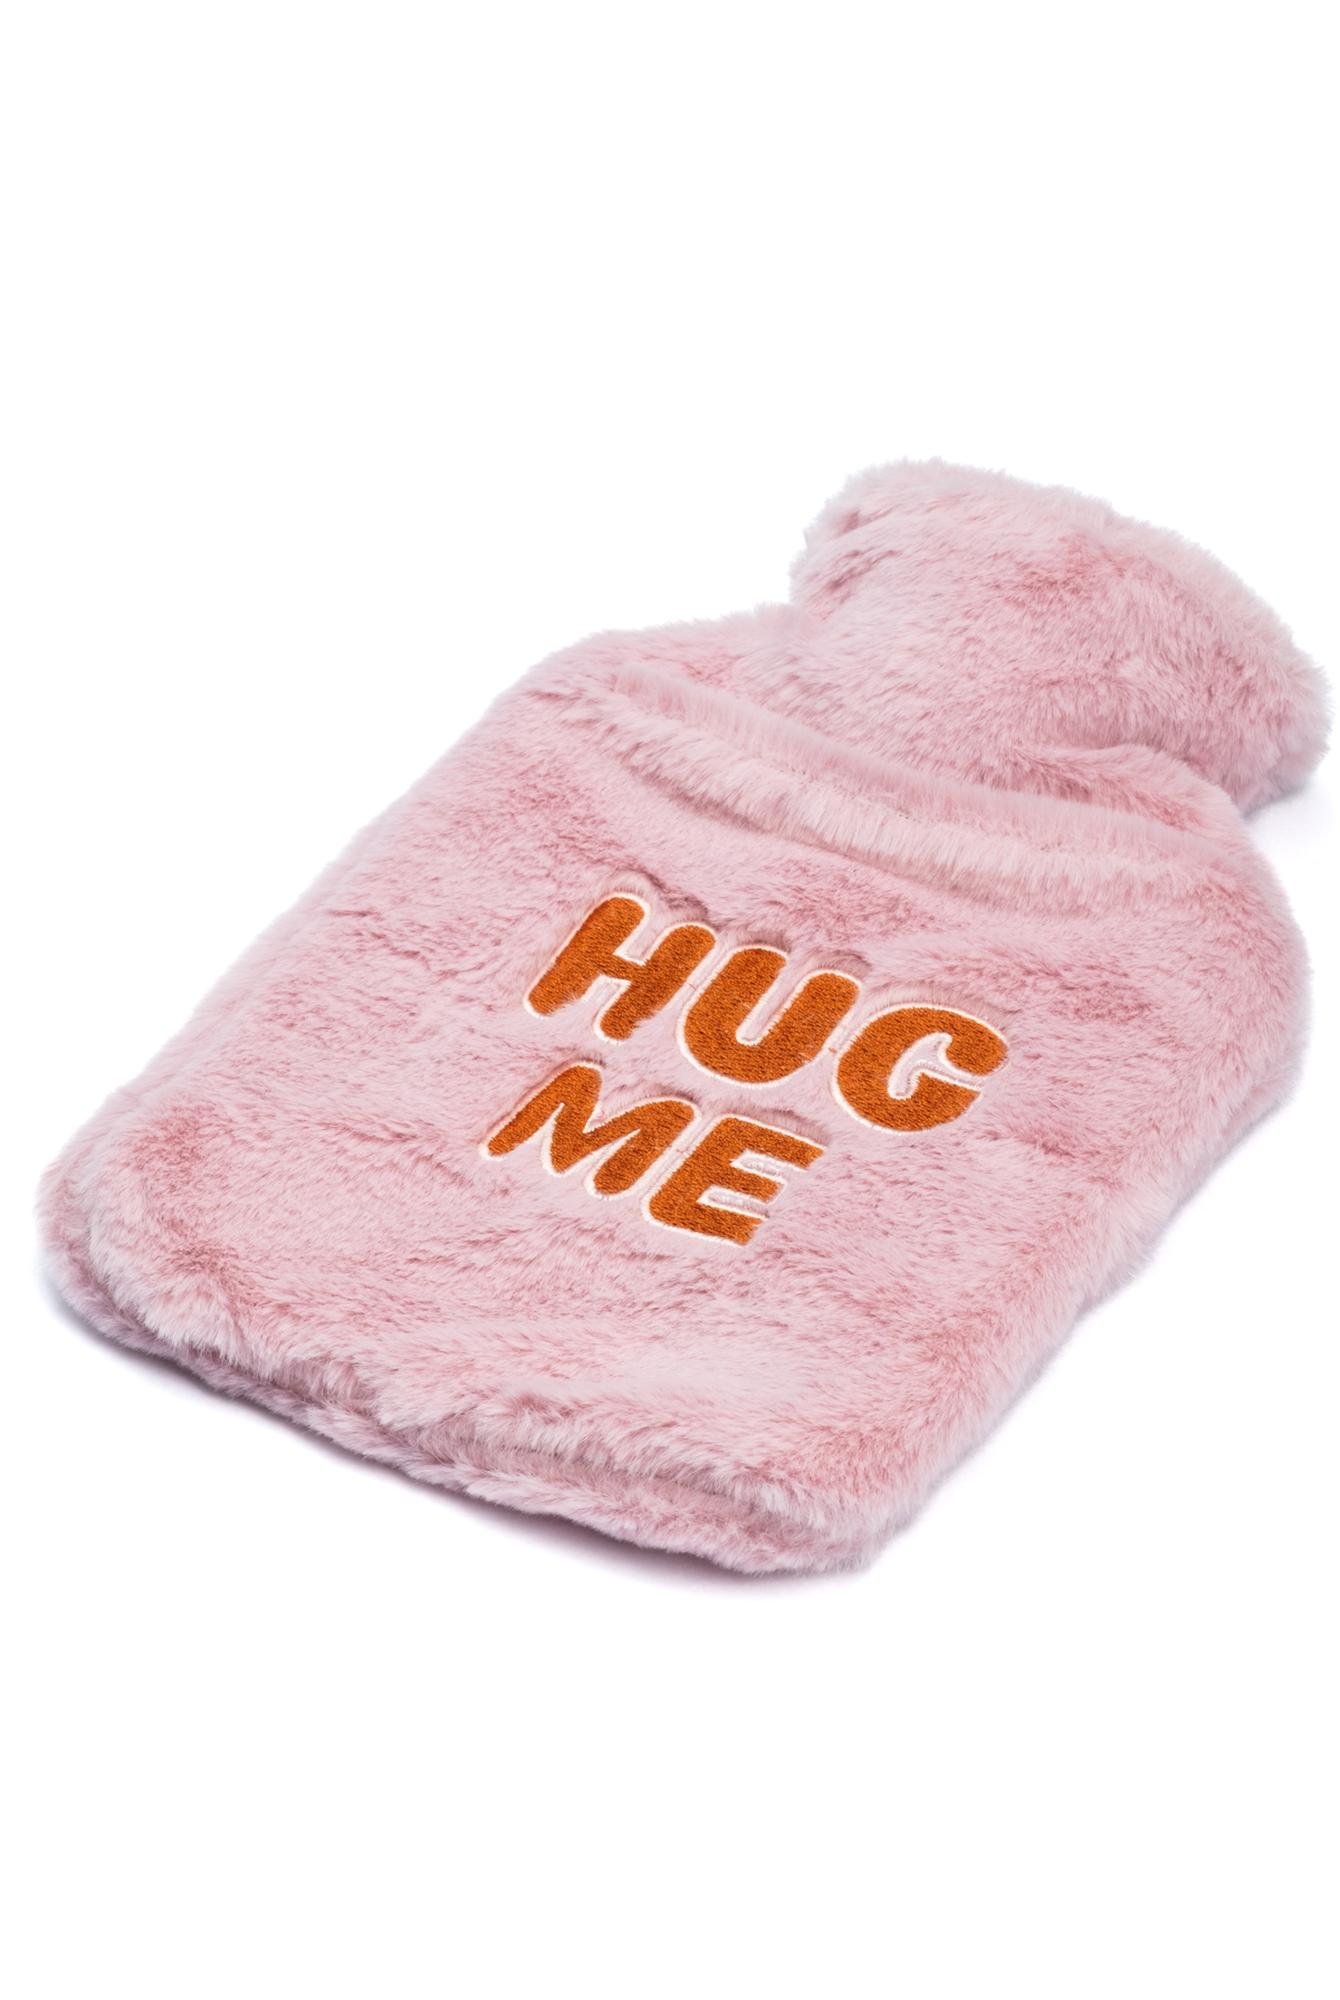  Yoyoso Pembe HUG ME Nakışlı Sıcak Su Torbası Termofor 800 ml 23 x 17 cm